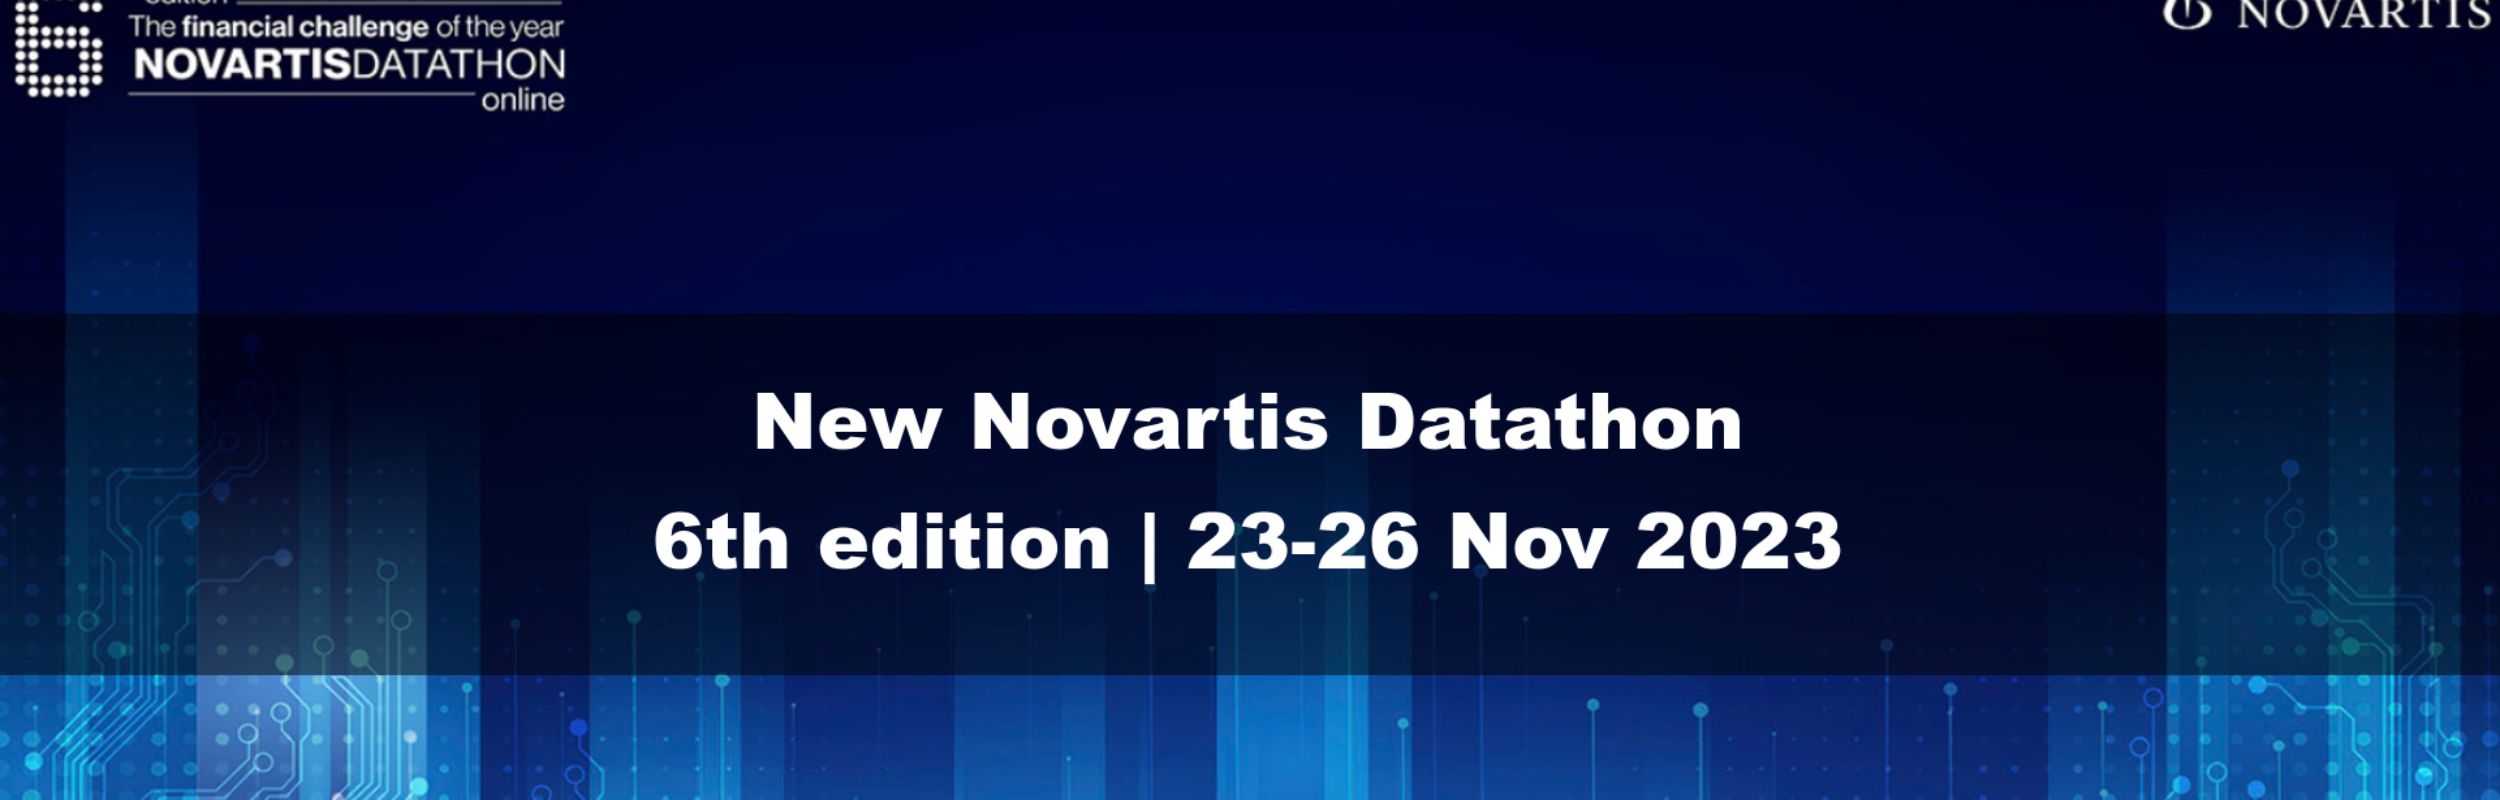 Sexta edición de la Novartis Datathon Challenge